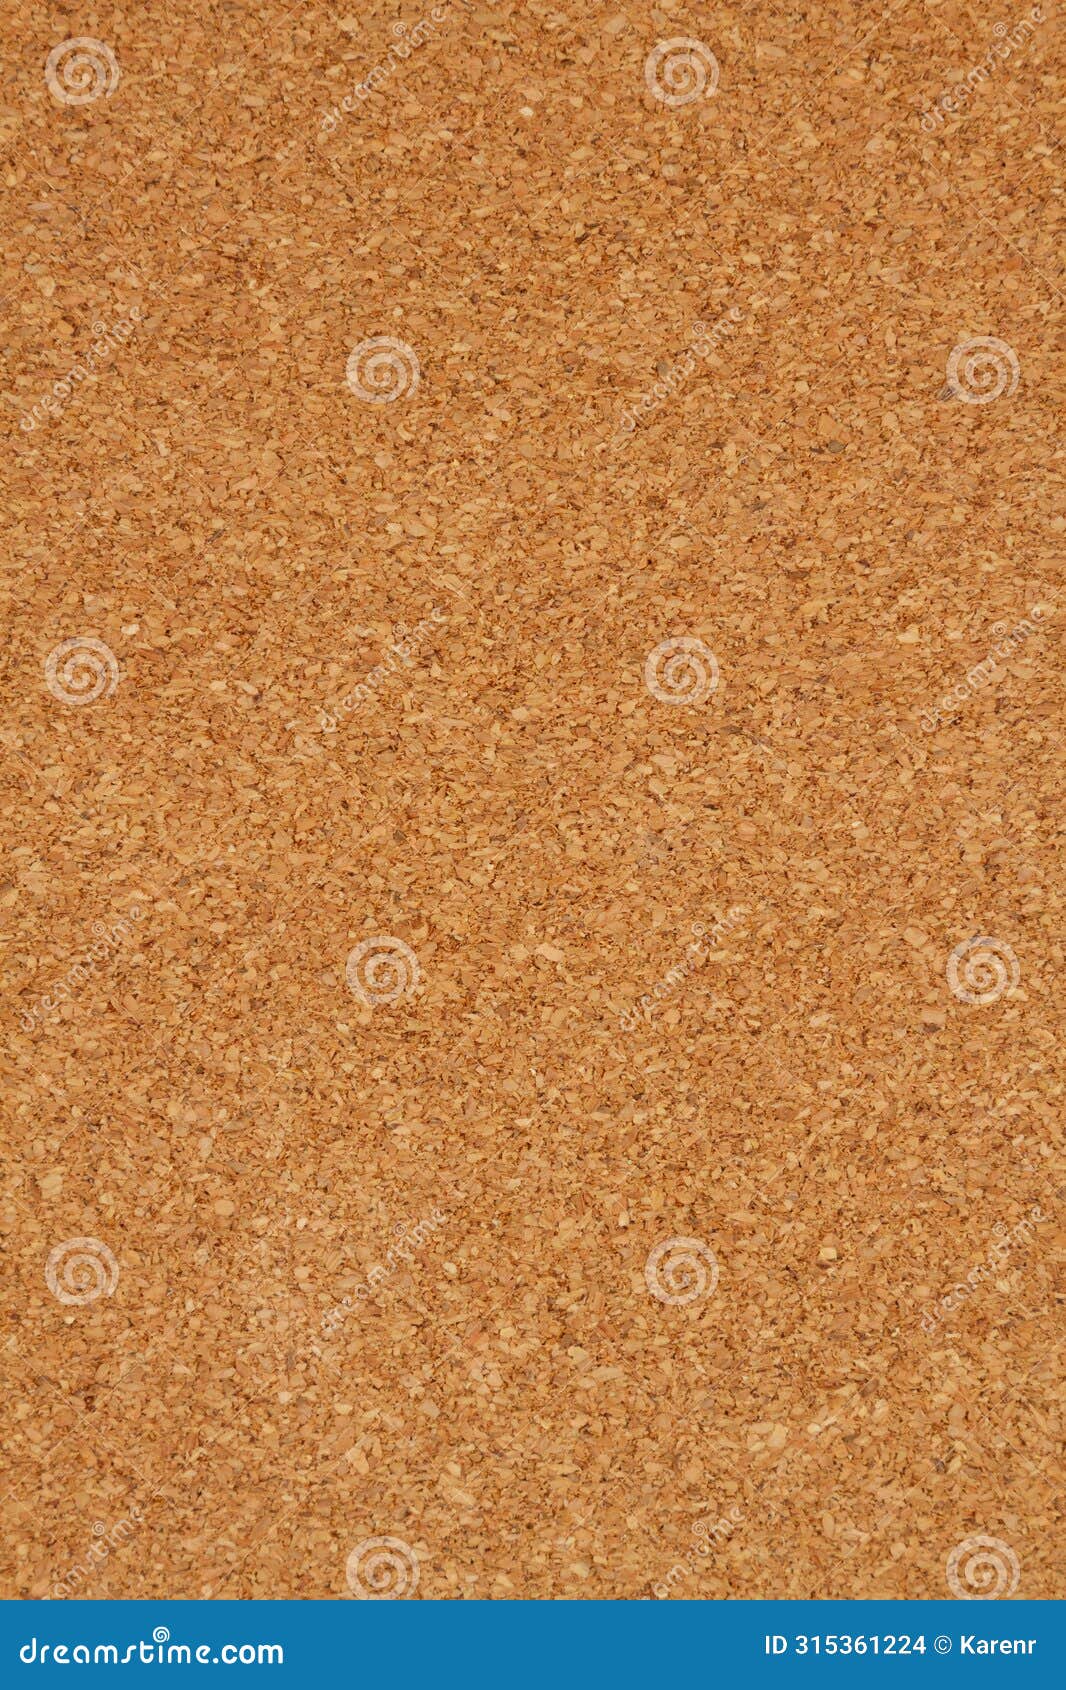 corkboard texture background